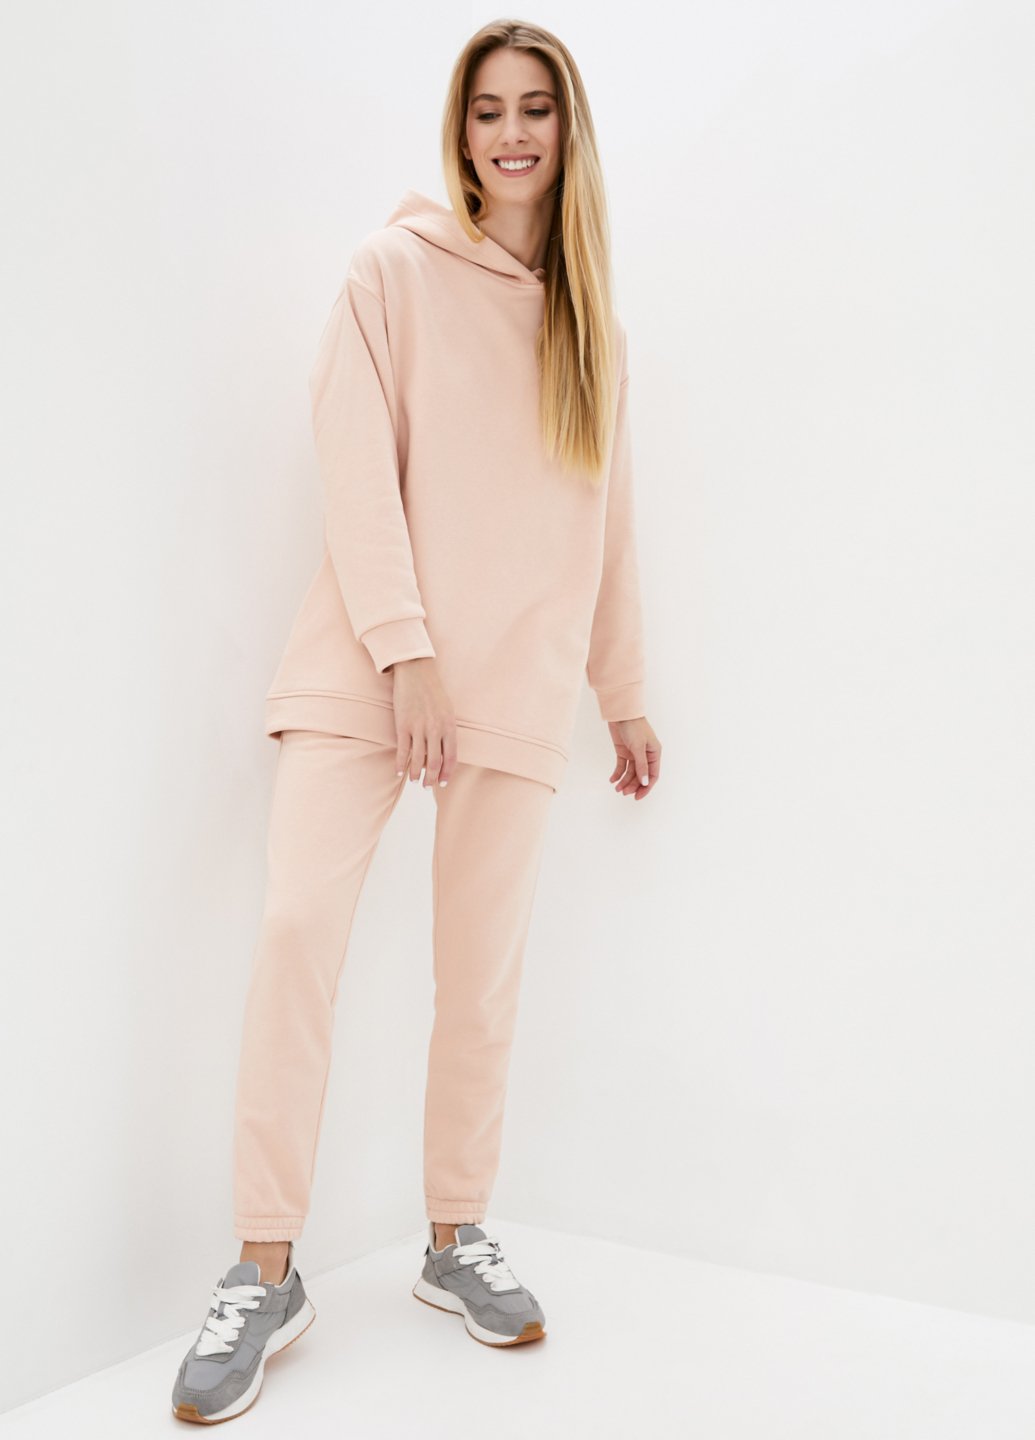 Купить Спортивный костюм женский светло-розового цвета Merlini Брент 100000076, размер 42-44 в интернет-магазине